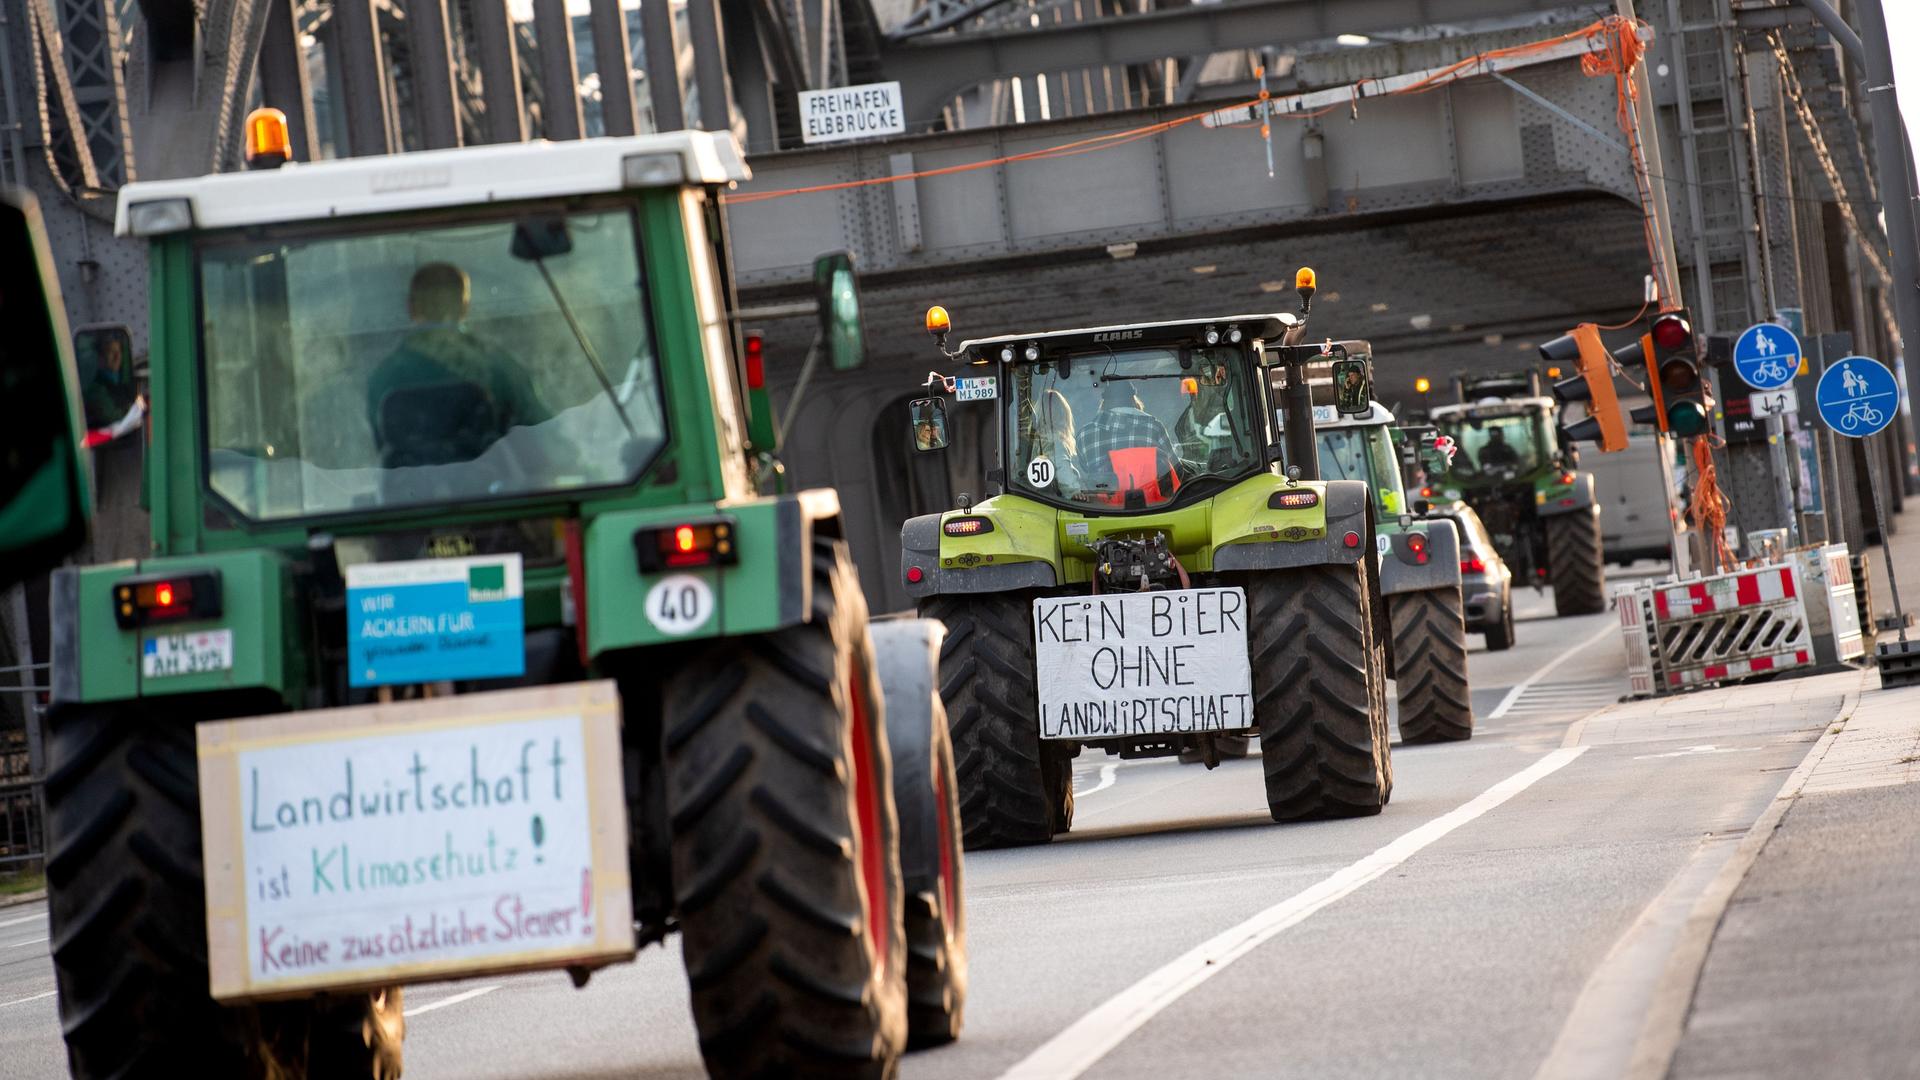 Hamburg: Traktoren mit Schildern mit der Aufschrift "Landwirtschaft ist Klimaschutz! Keine zusätzliche Steuer" und "Kein Bier ohne Landwirtschaft" fahren über die Freihafenelbbrücke.